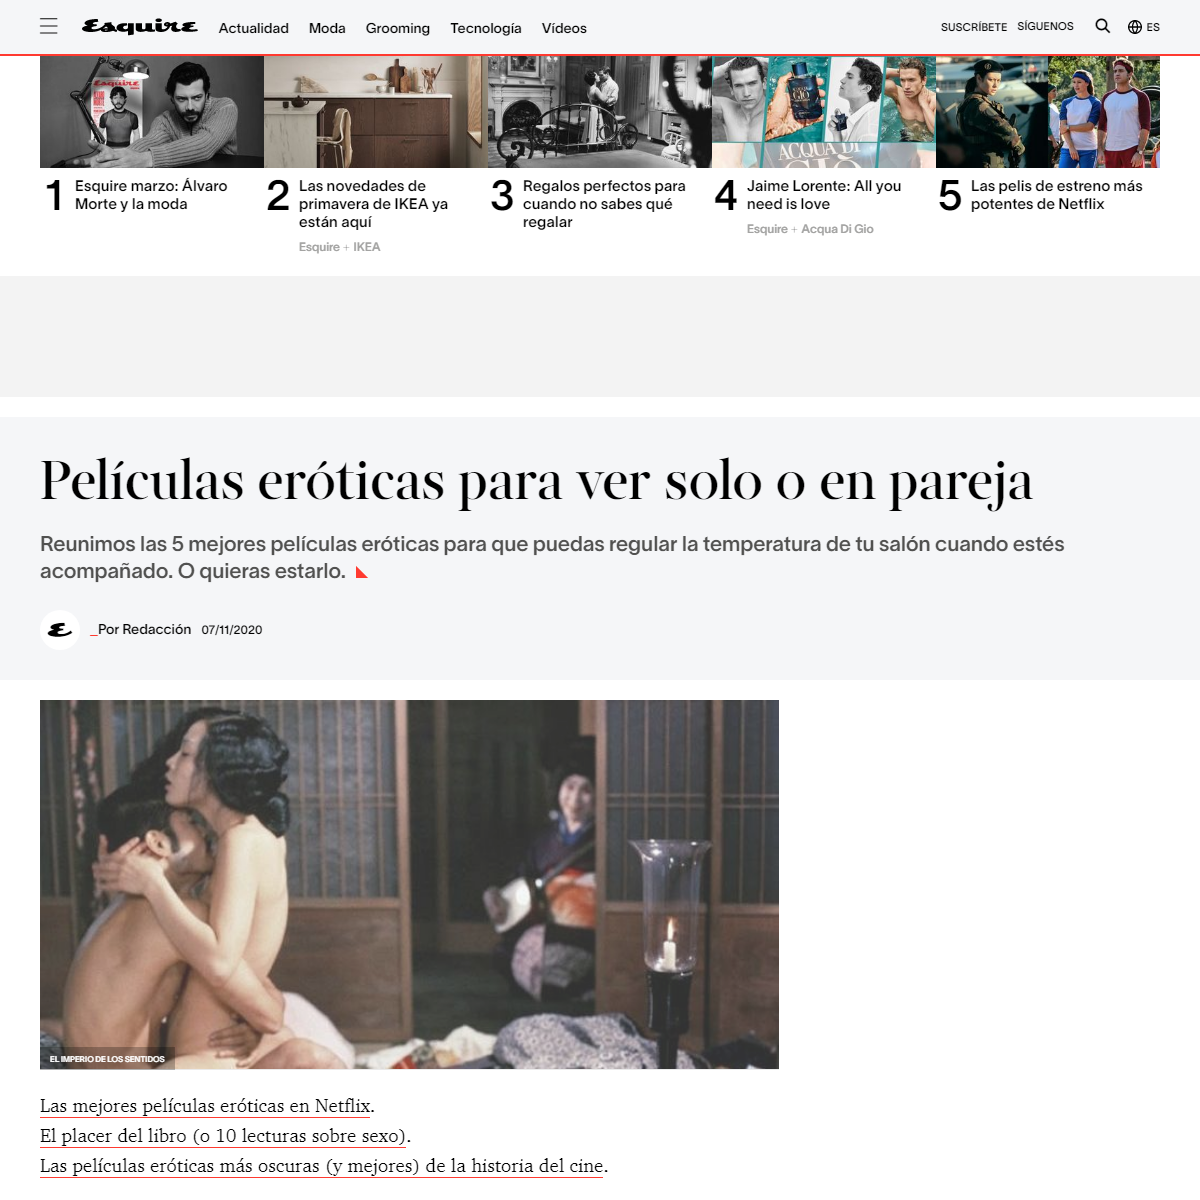 A complete backup of https://www.esquire.com/es/actualidad/cine/g13070040/peliculas-eroticas-para-ver-solo-o-en-pareja/